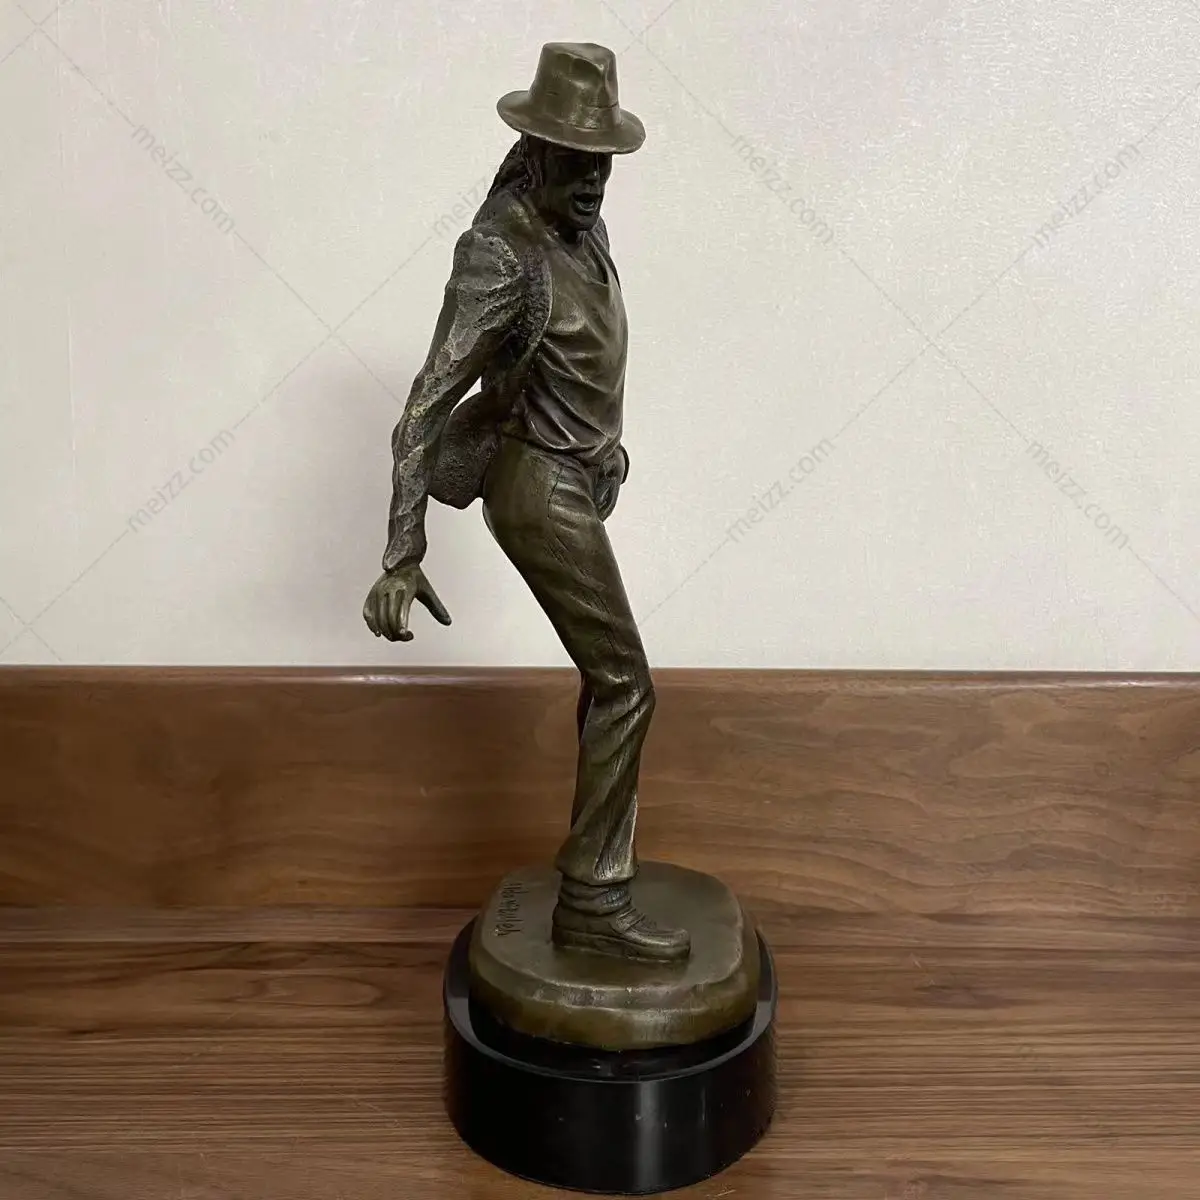 michael jackson sculpture